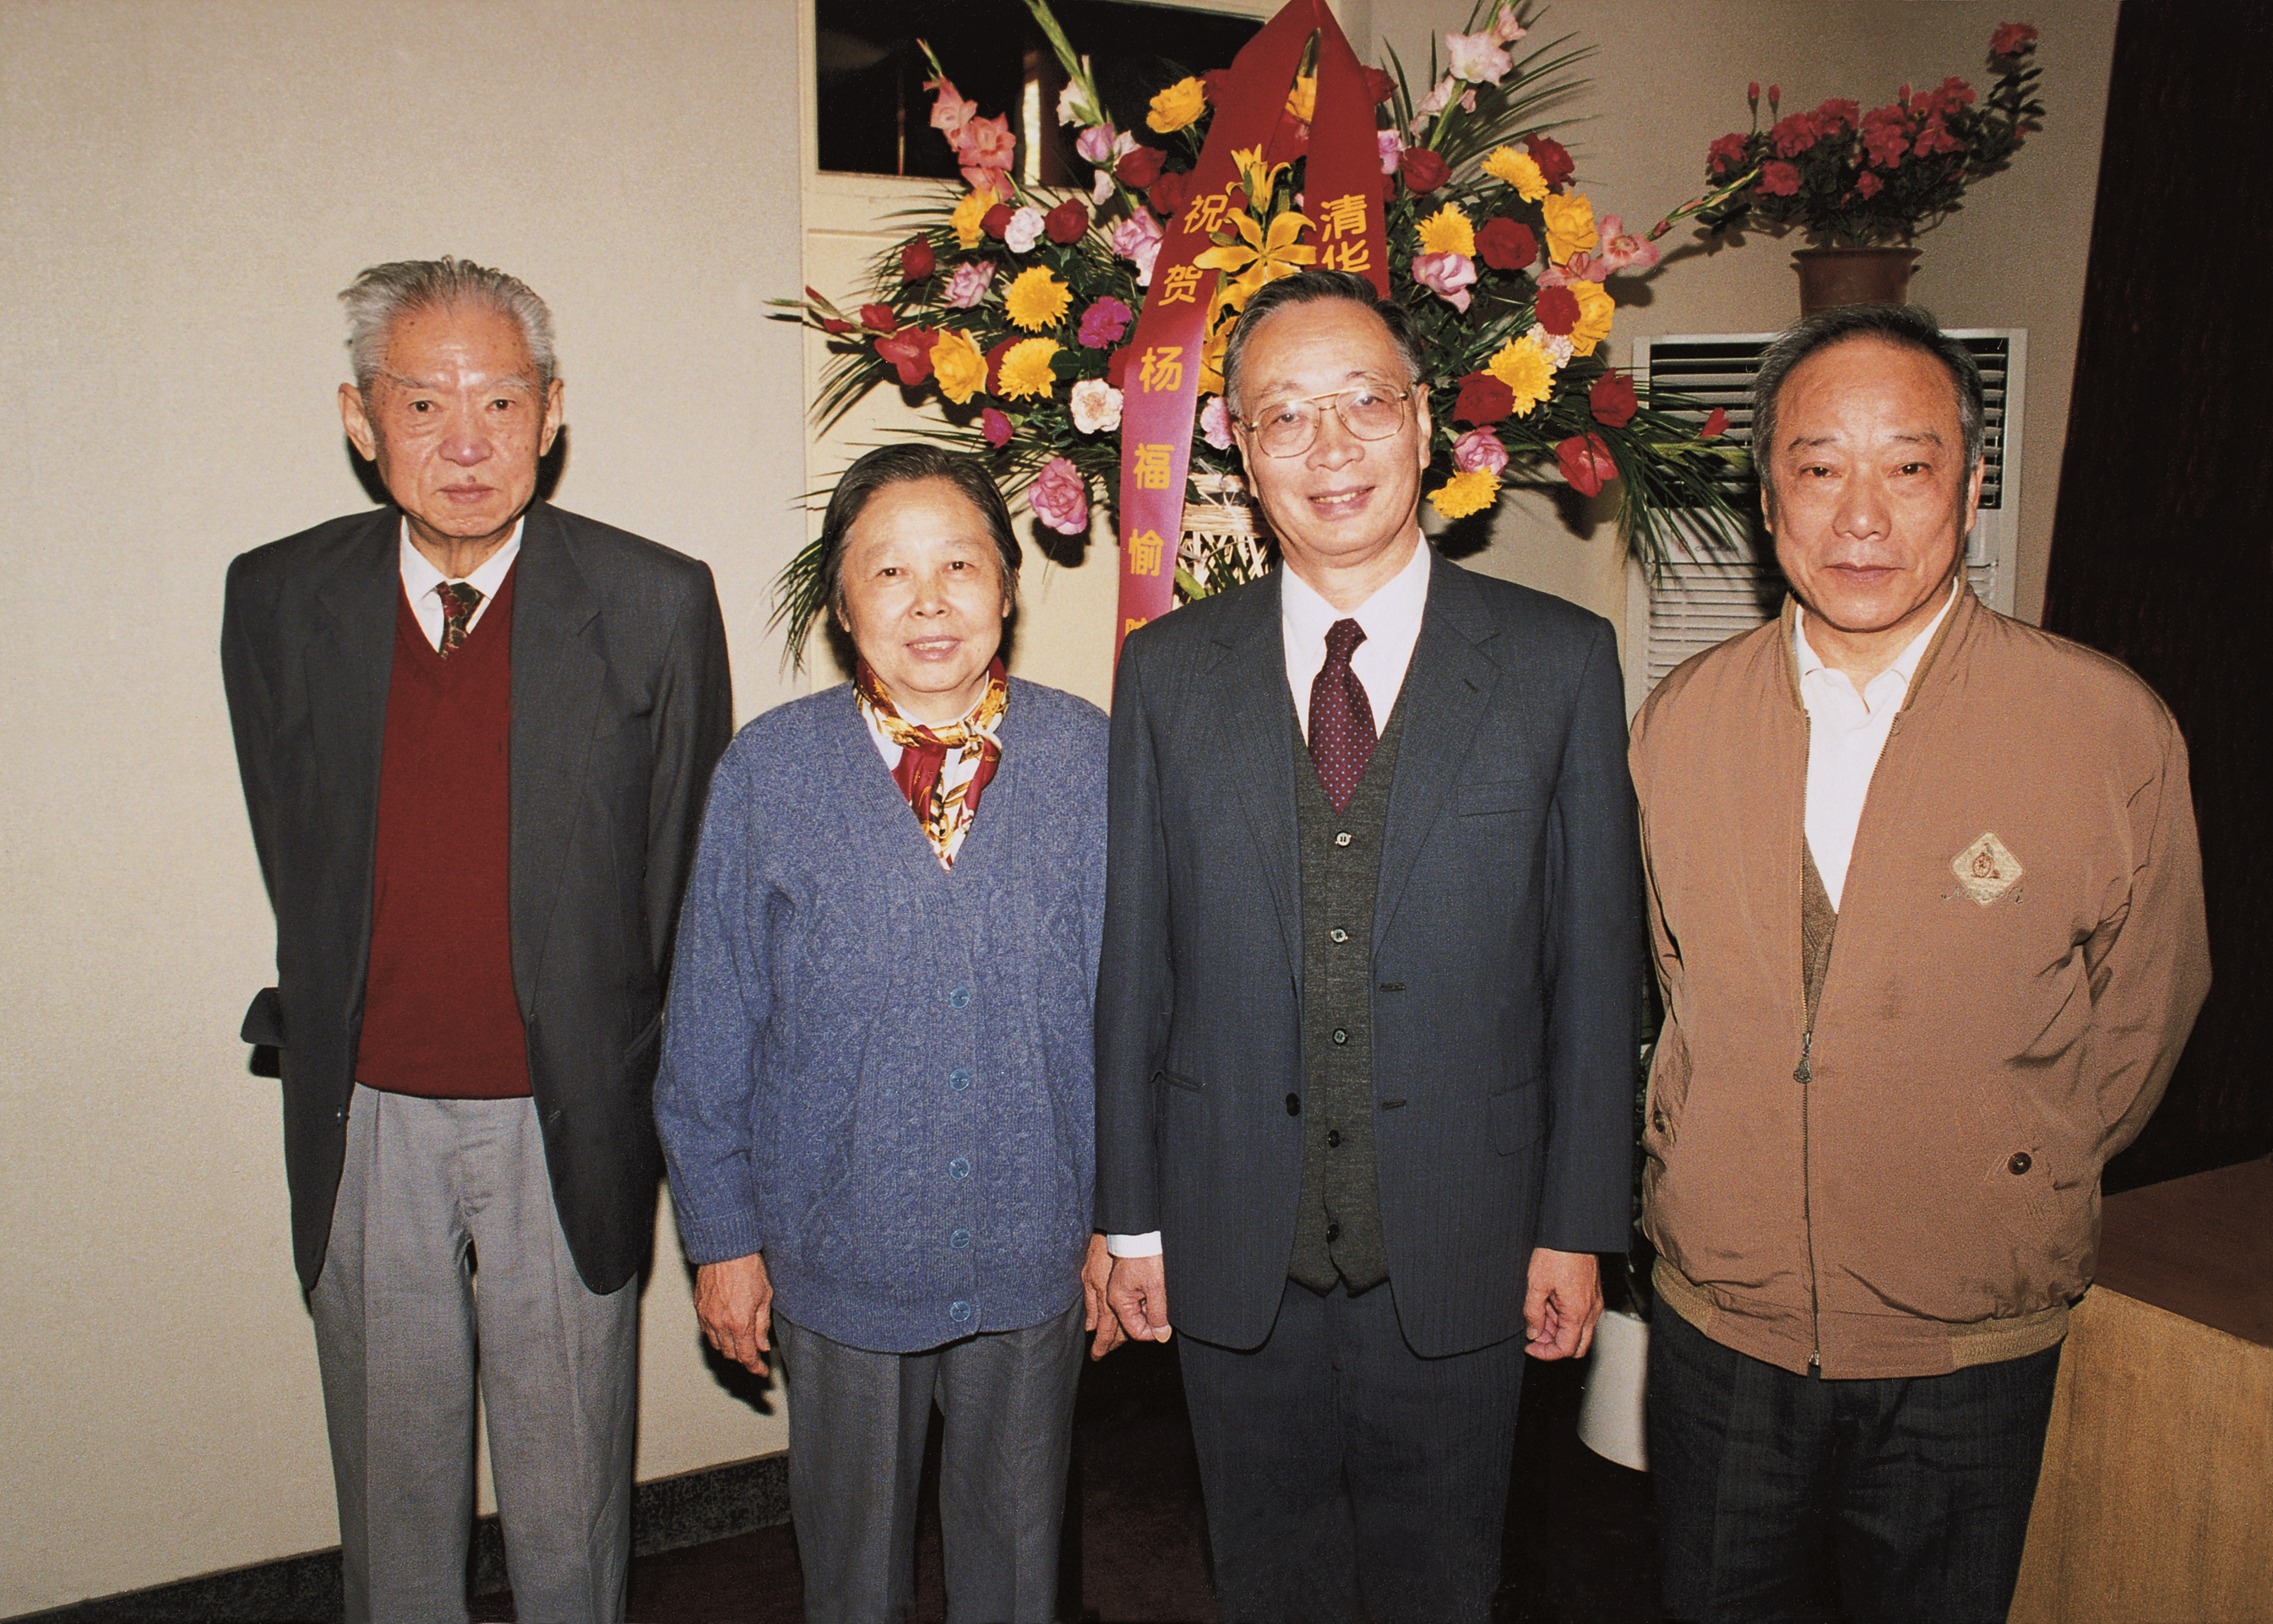 1997年生物大分子国家重点实验室庆贺杨福愉70寿辰时同夫人王锦兰女士与邹承鲁院士(左1)、梁栋材院士(右1)合影